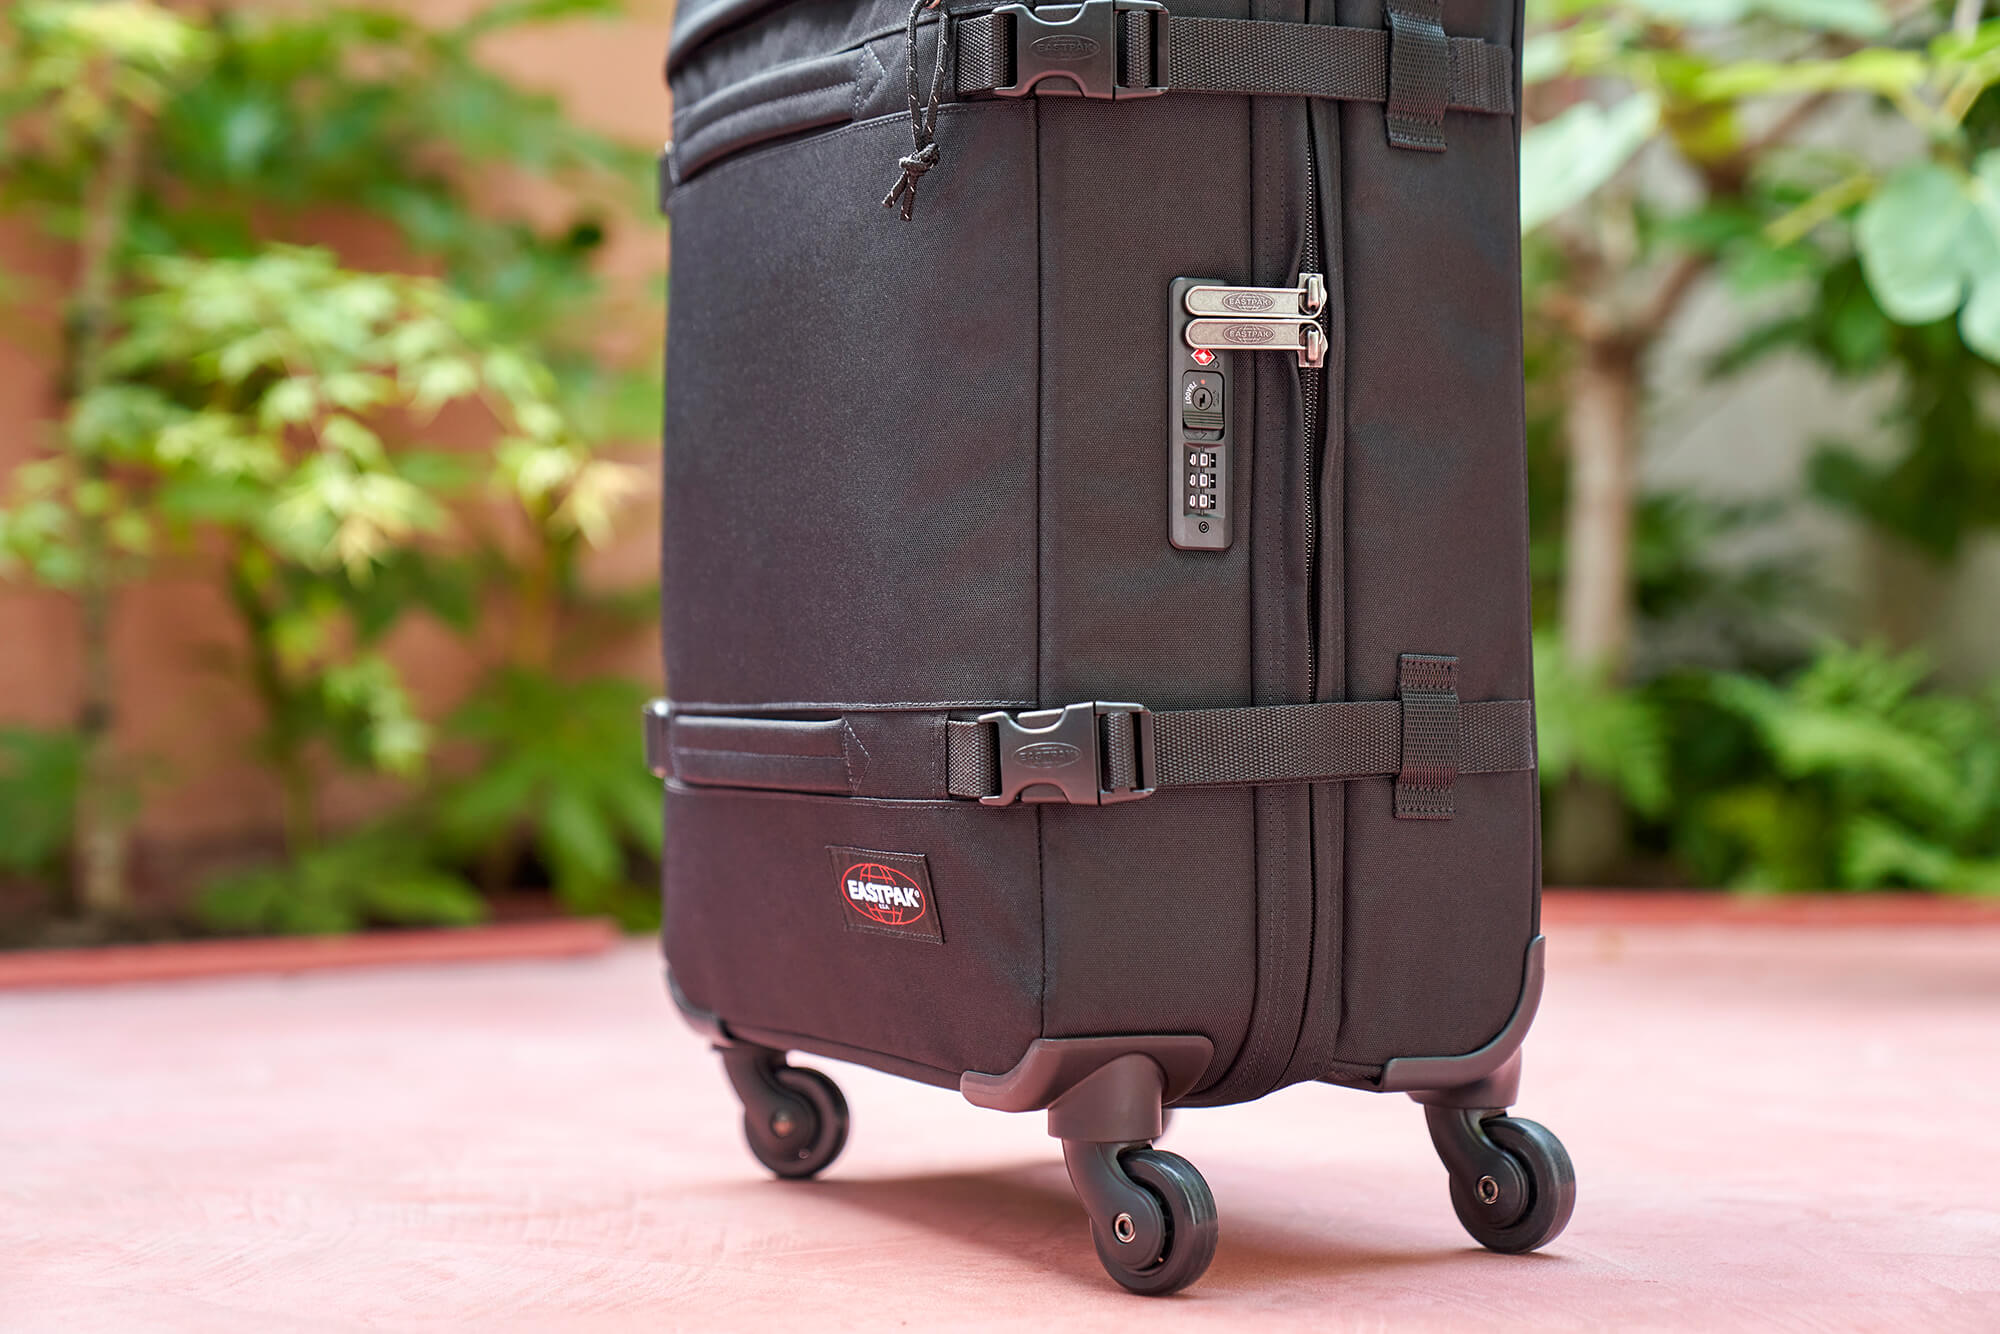 Eastpak Transit'R 4 M 68 Litres Four Wheel Soft Suitcase